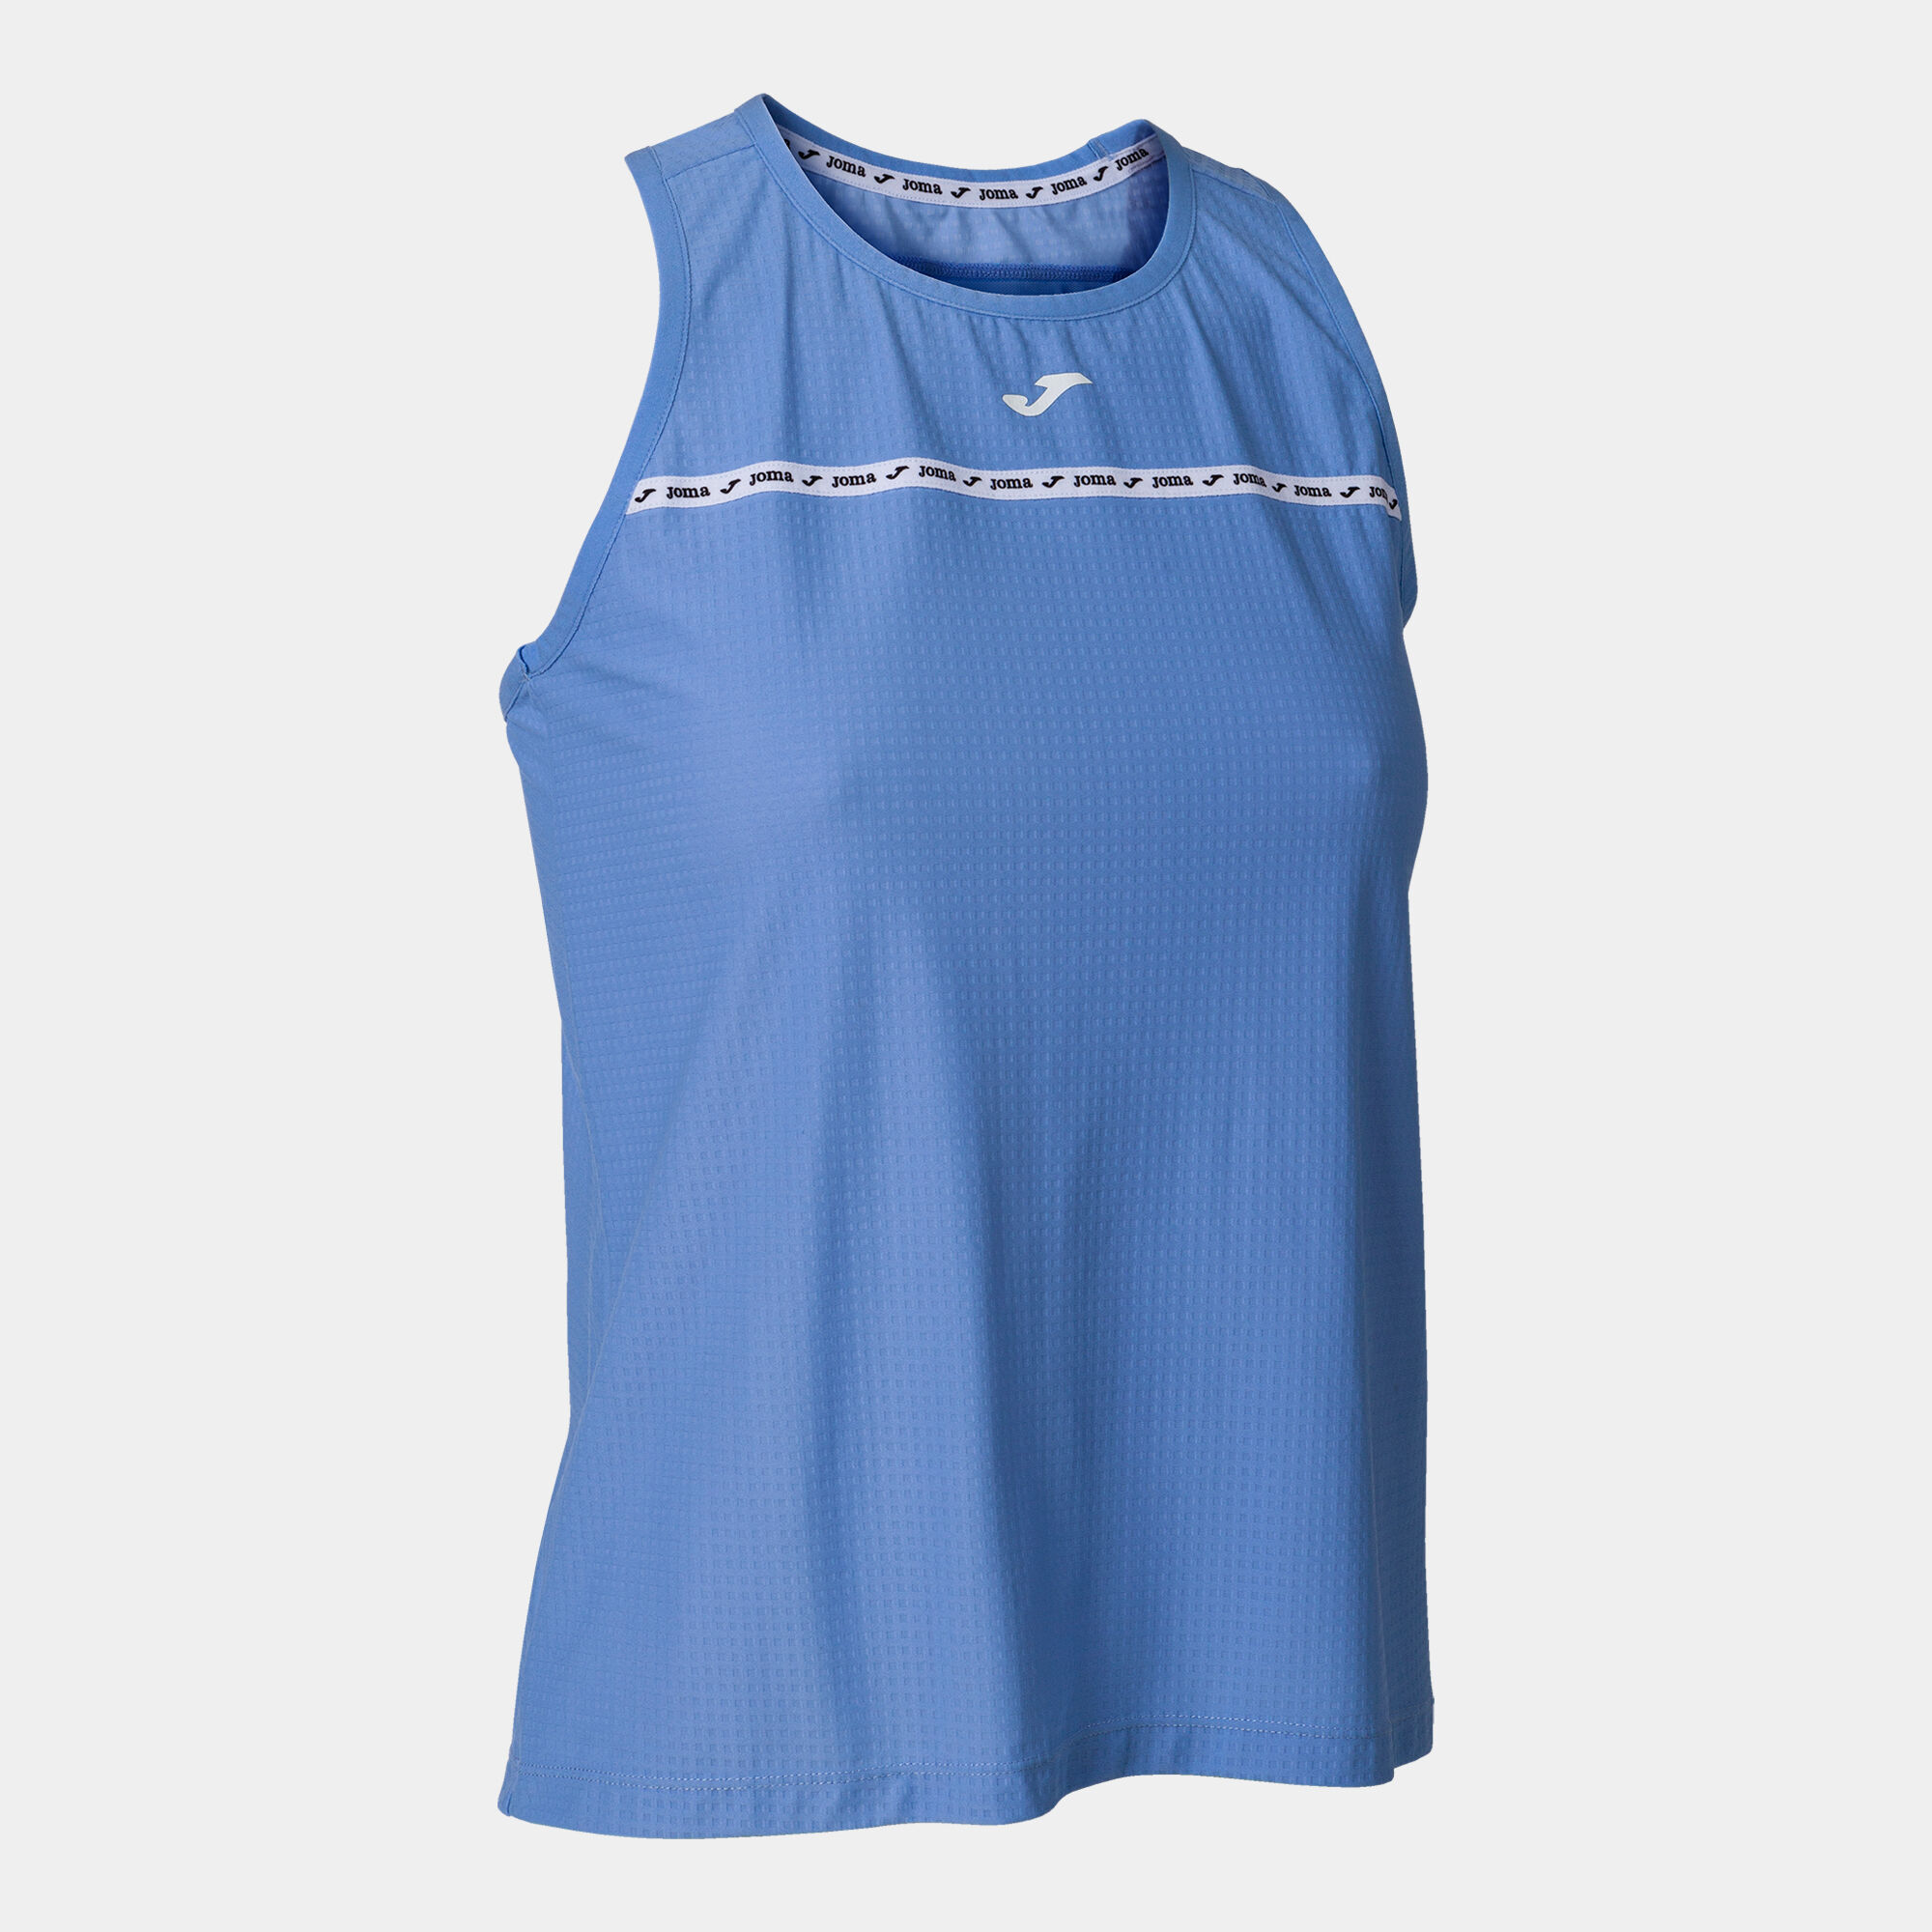 T-shirt de alça mulher Urban Street azul